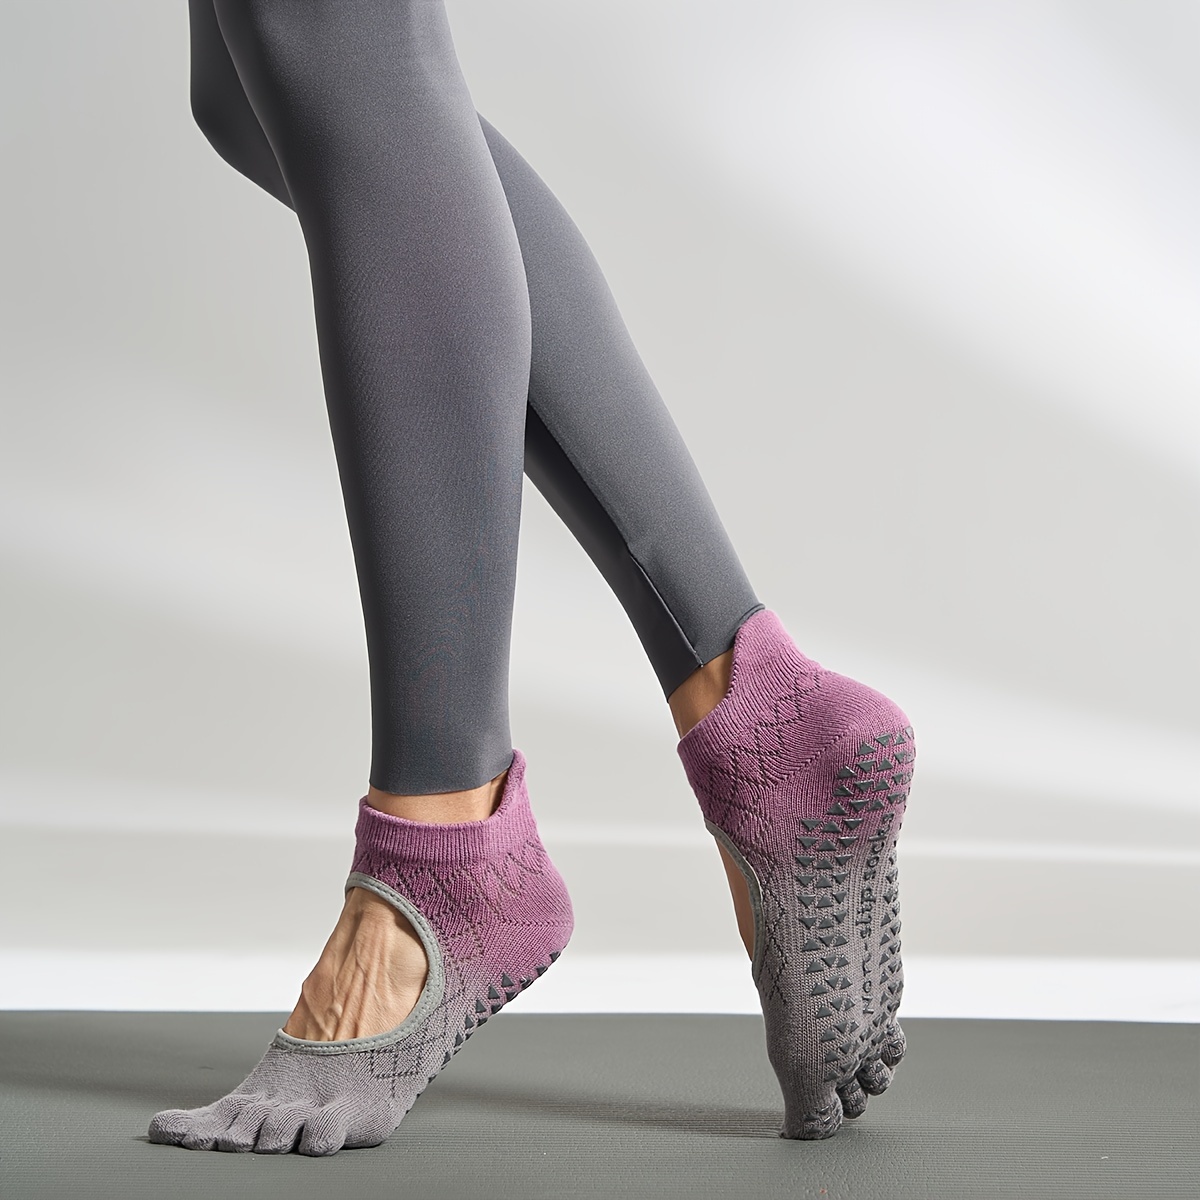 

1 Pair Women's Gradient Non-slip Yoga Socks With Full Fingers Design, Breathable Mesh Pilates, Dance Socks